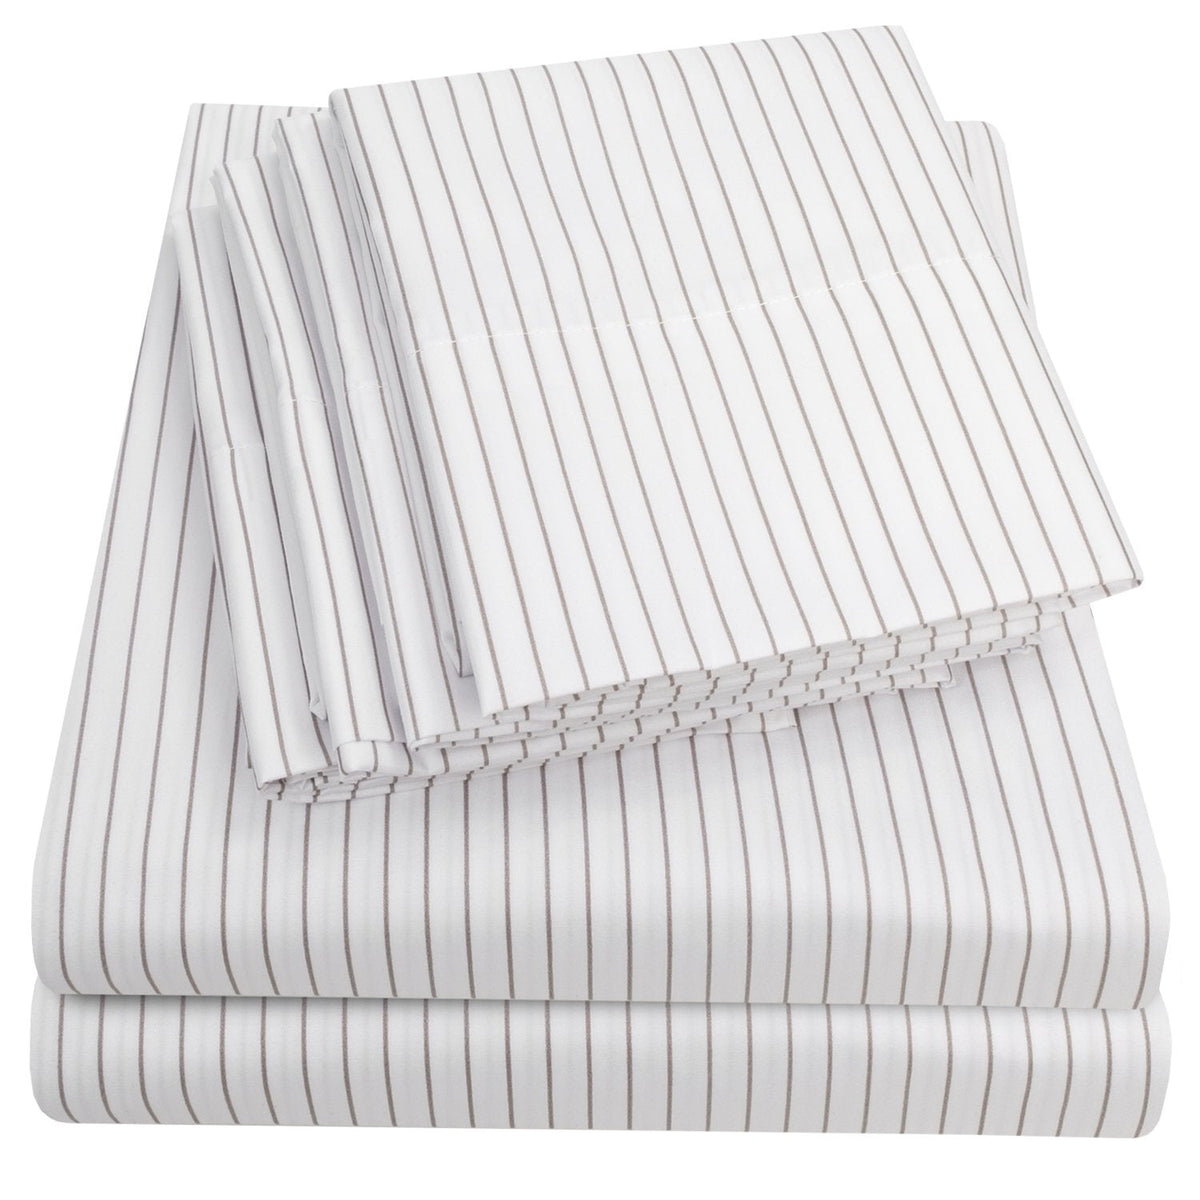 Deluxe 6-Piece Bed Sheet Set (Loft Pinstripe White) - Folded